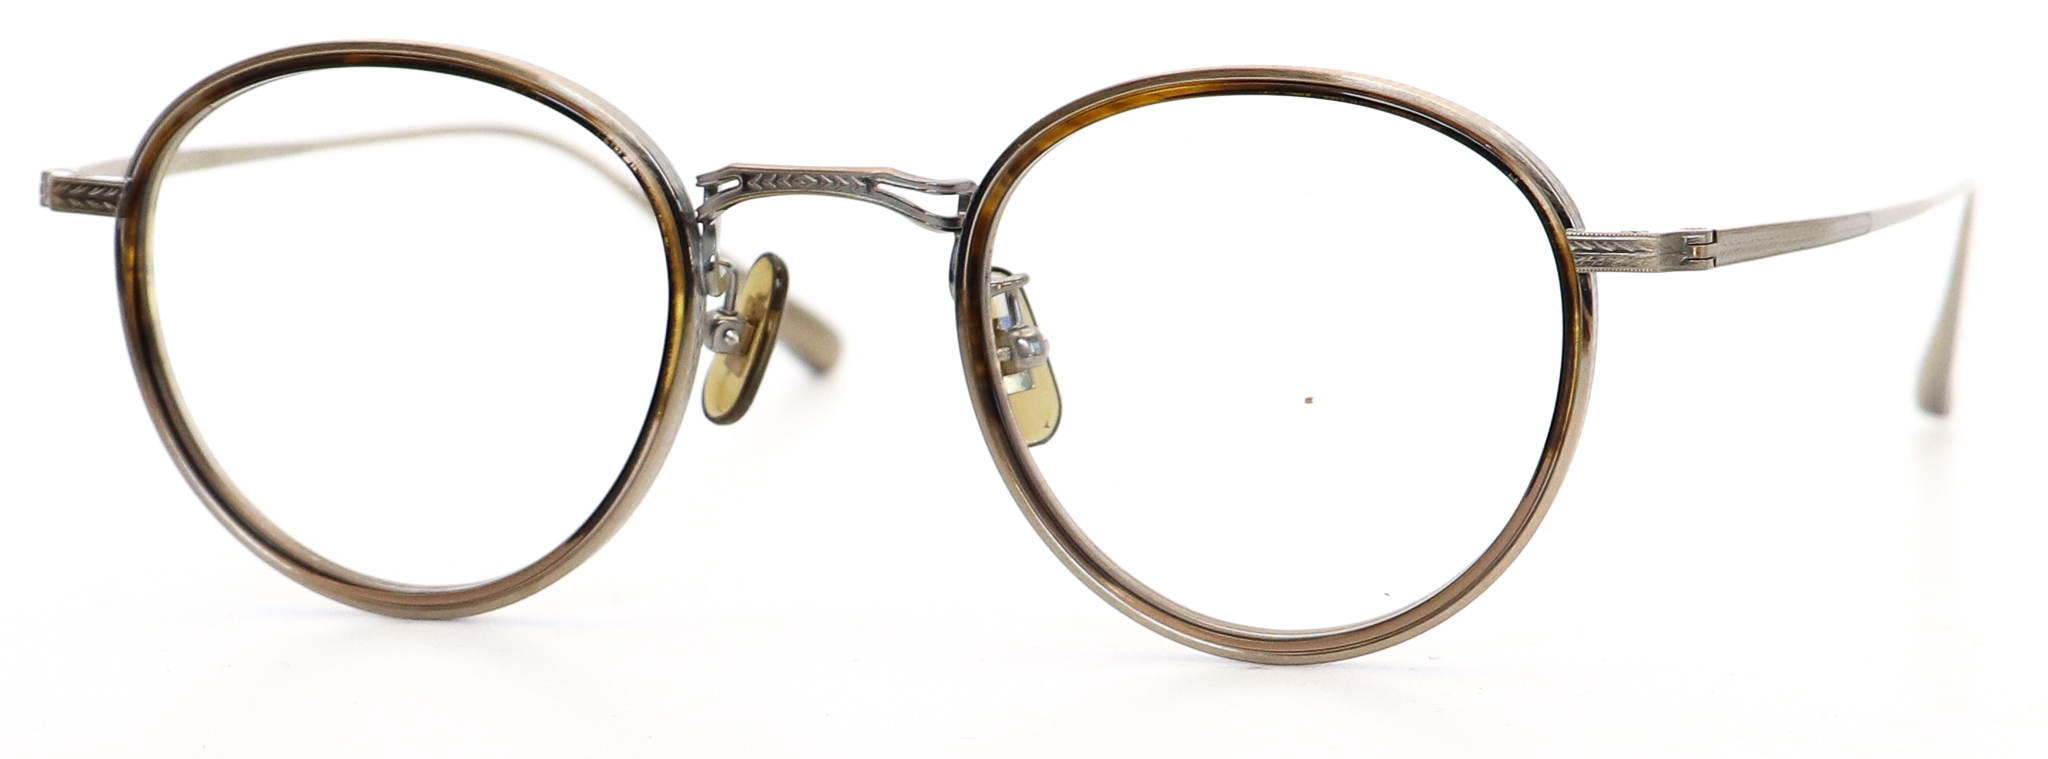 眼鏡のカラータイプC-3 Brown-Half/At-Gold